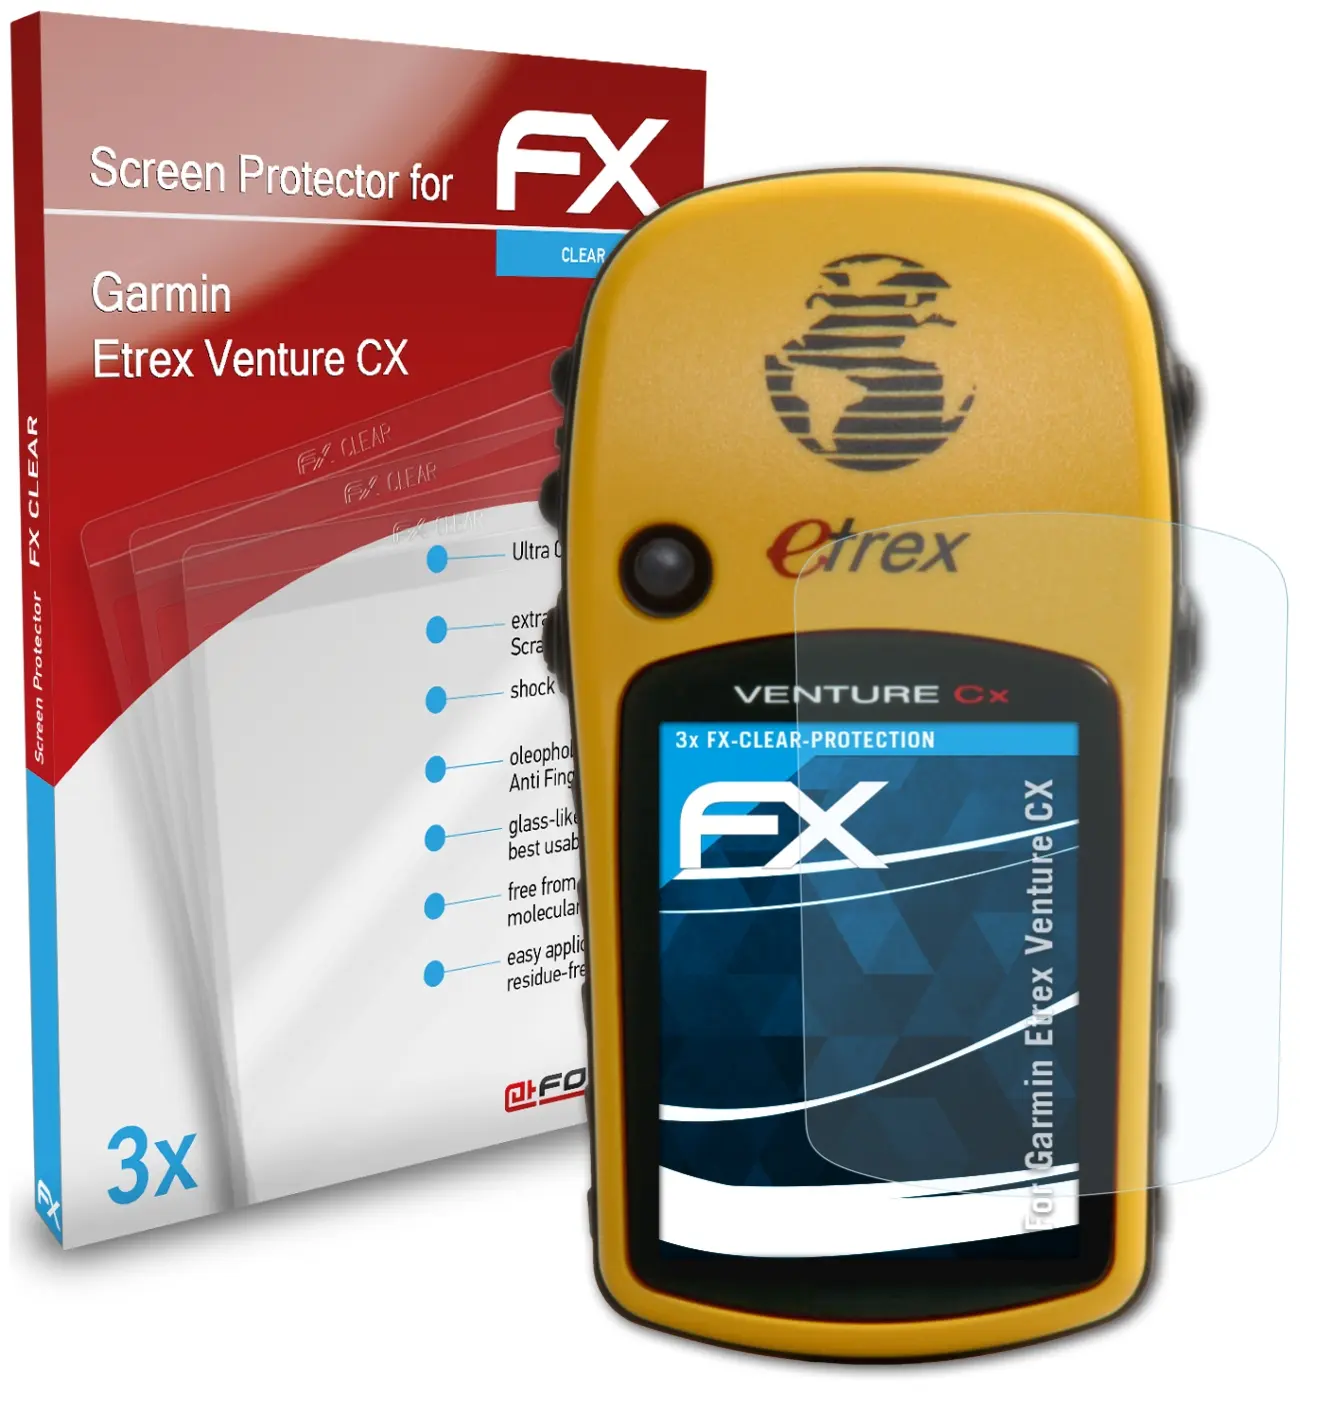 Garmin Etrex Venture CX 1